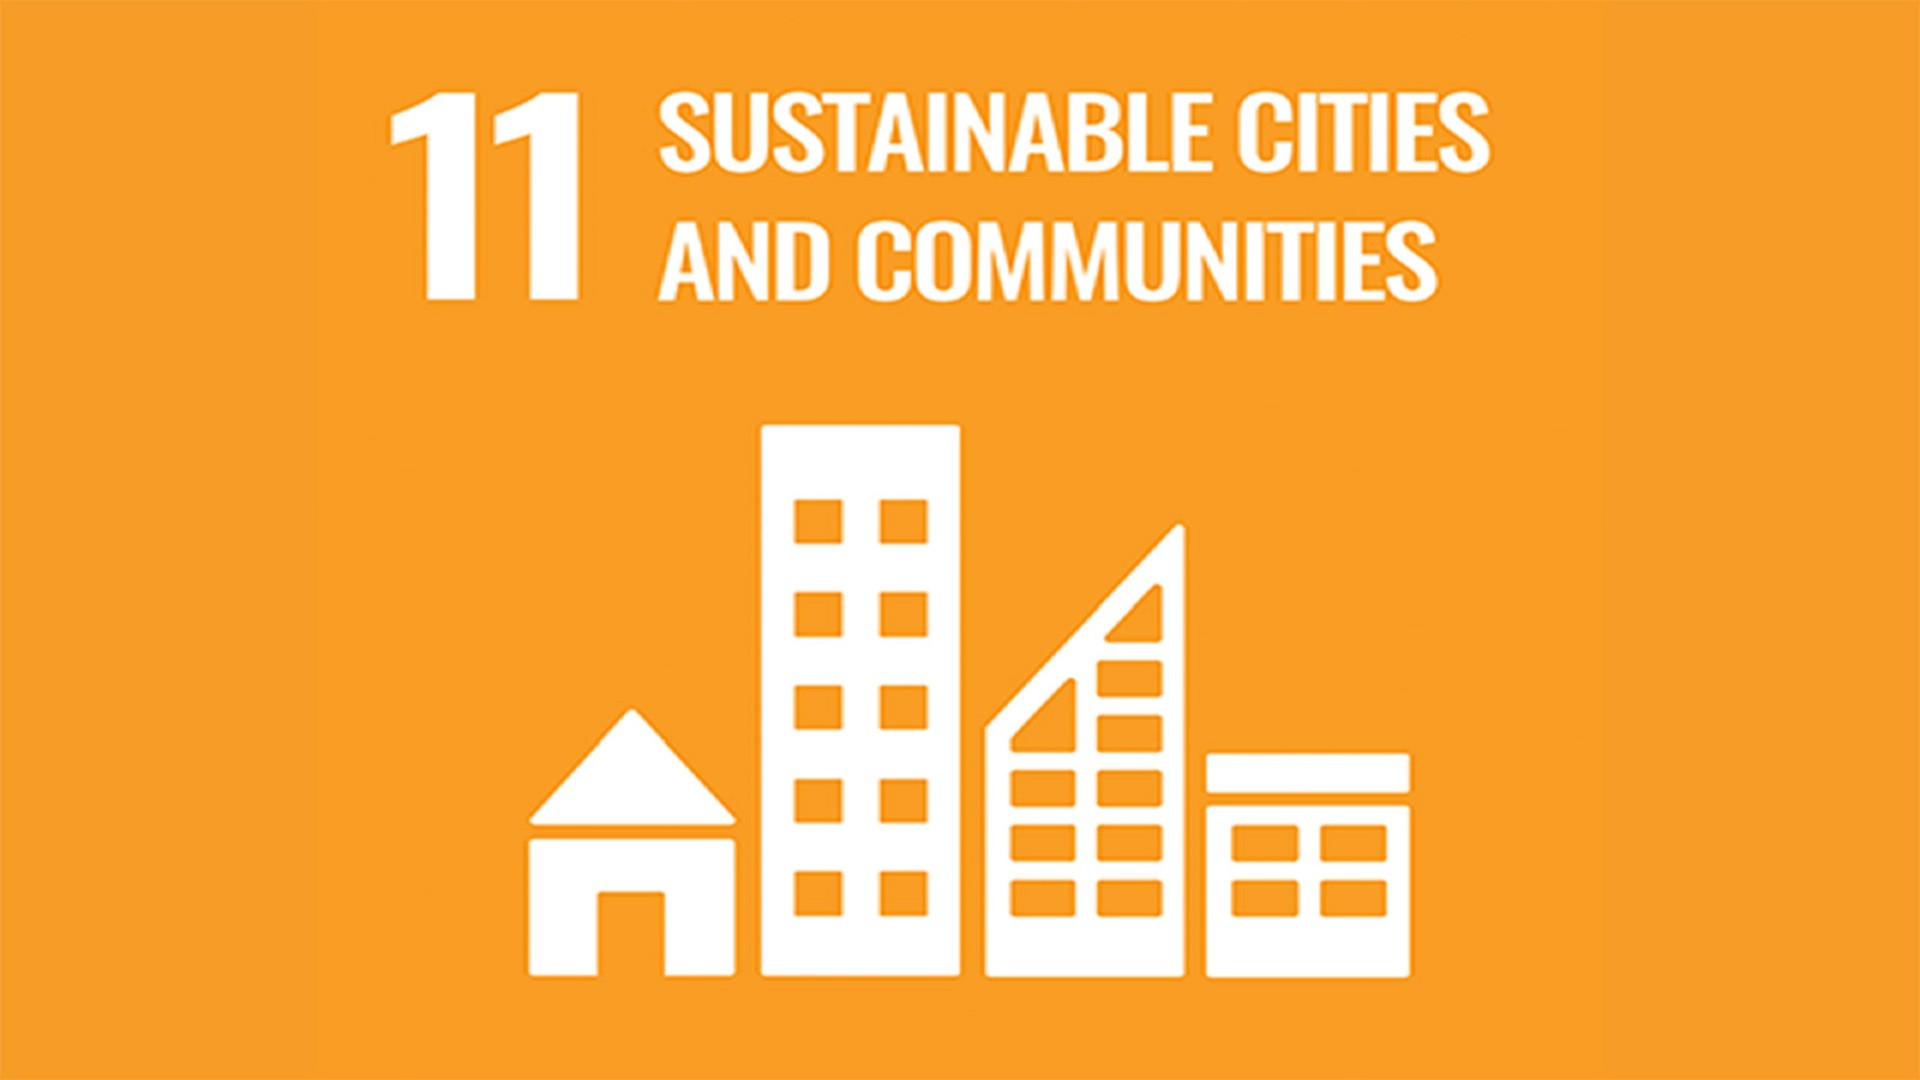 聯合國永續發展目標 11: 永續城市與社區